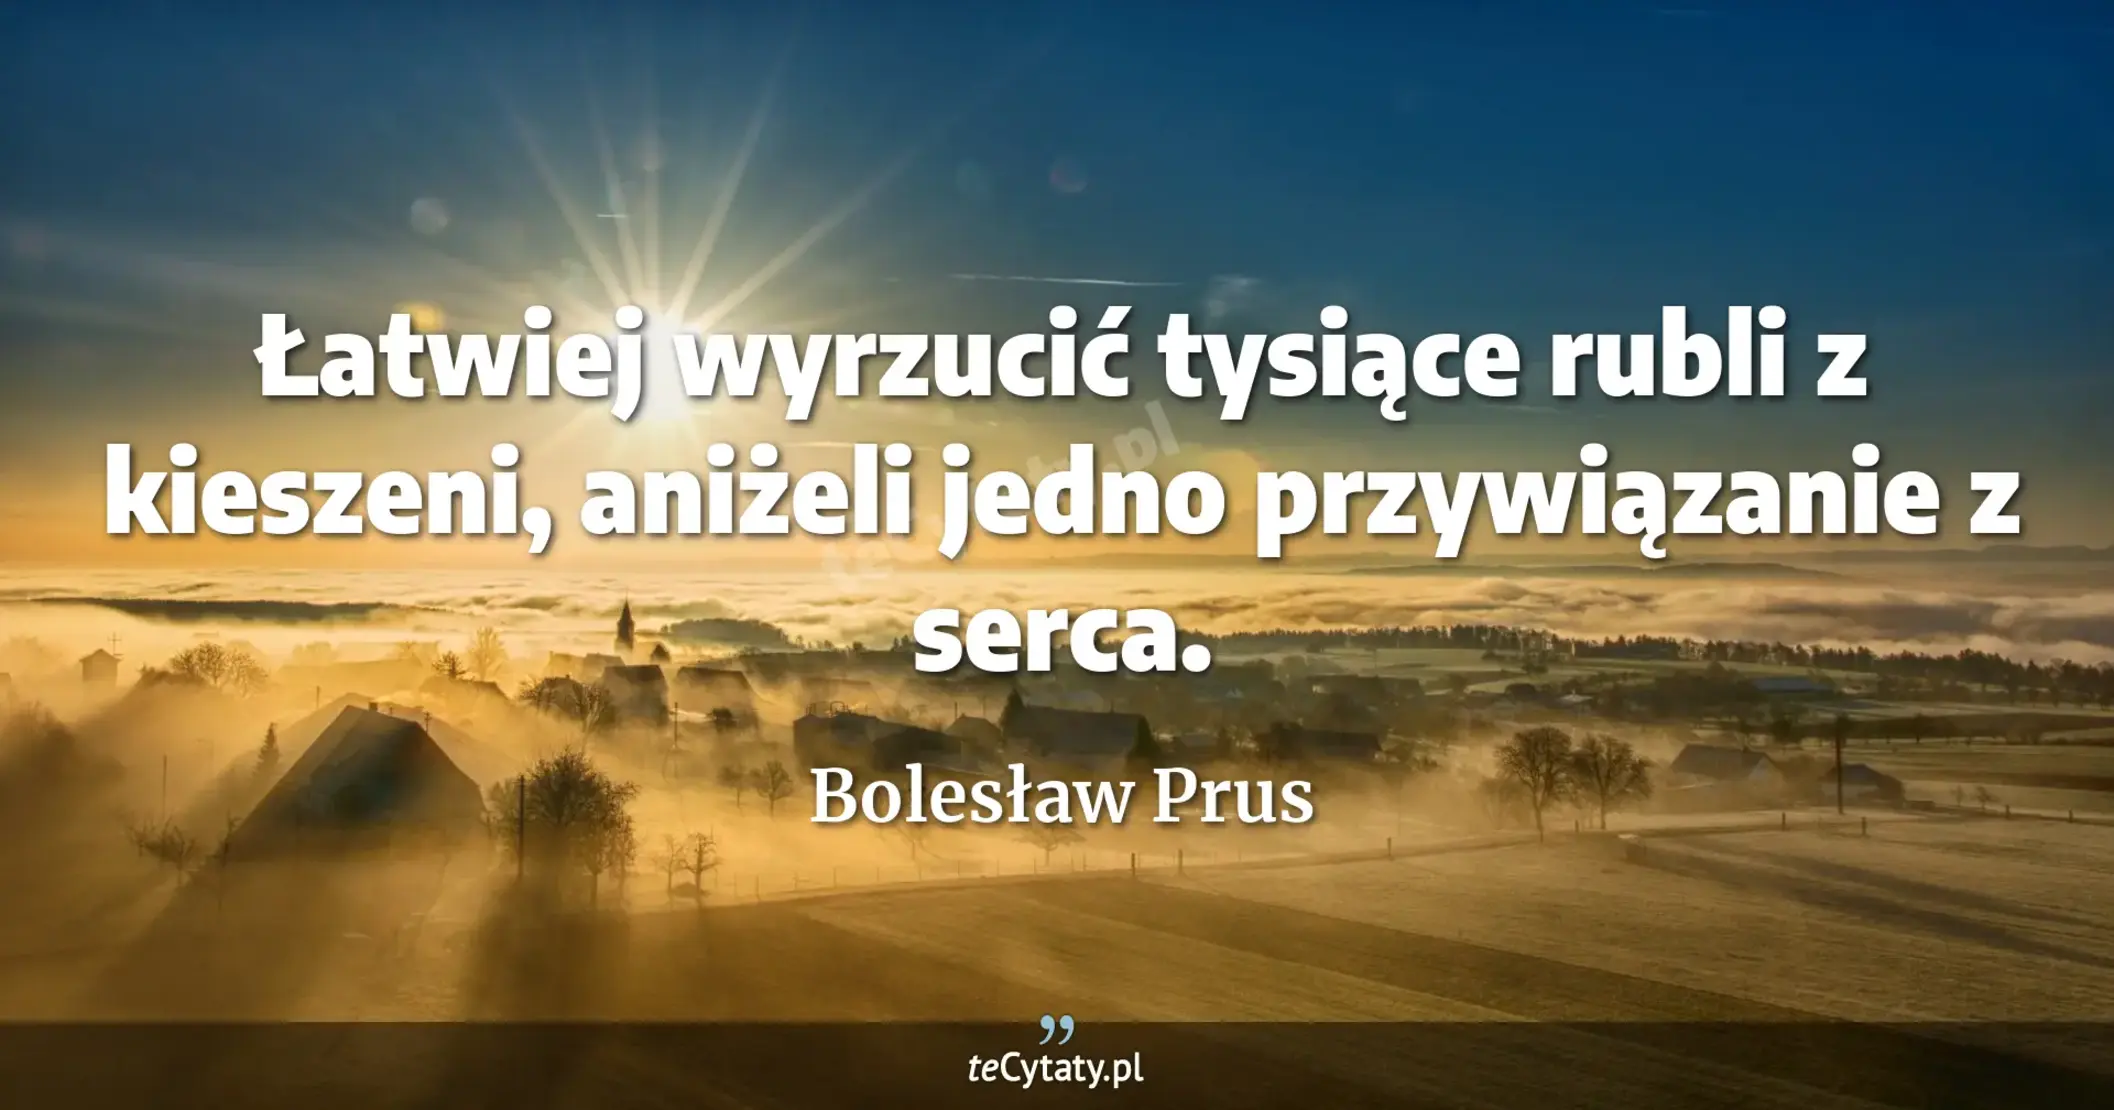 Łatwiej wyrzucić tysiące rubli z kieszeni, aniżeli jedno przywiązanie z serca. - Bolesław Prus